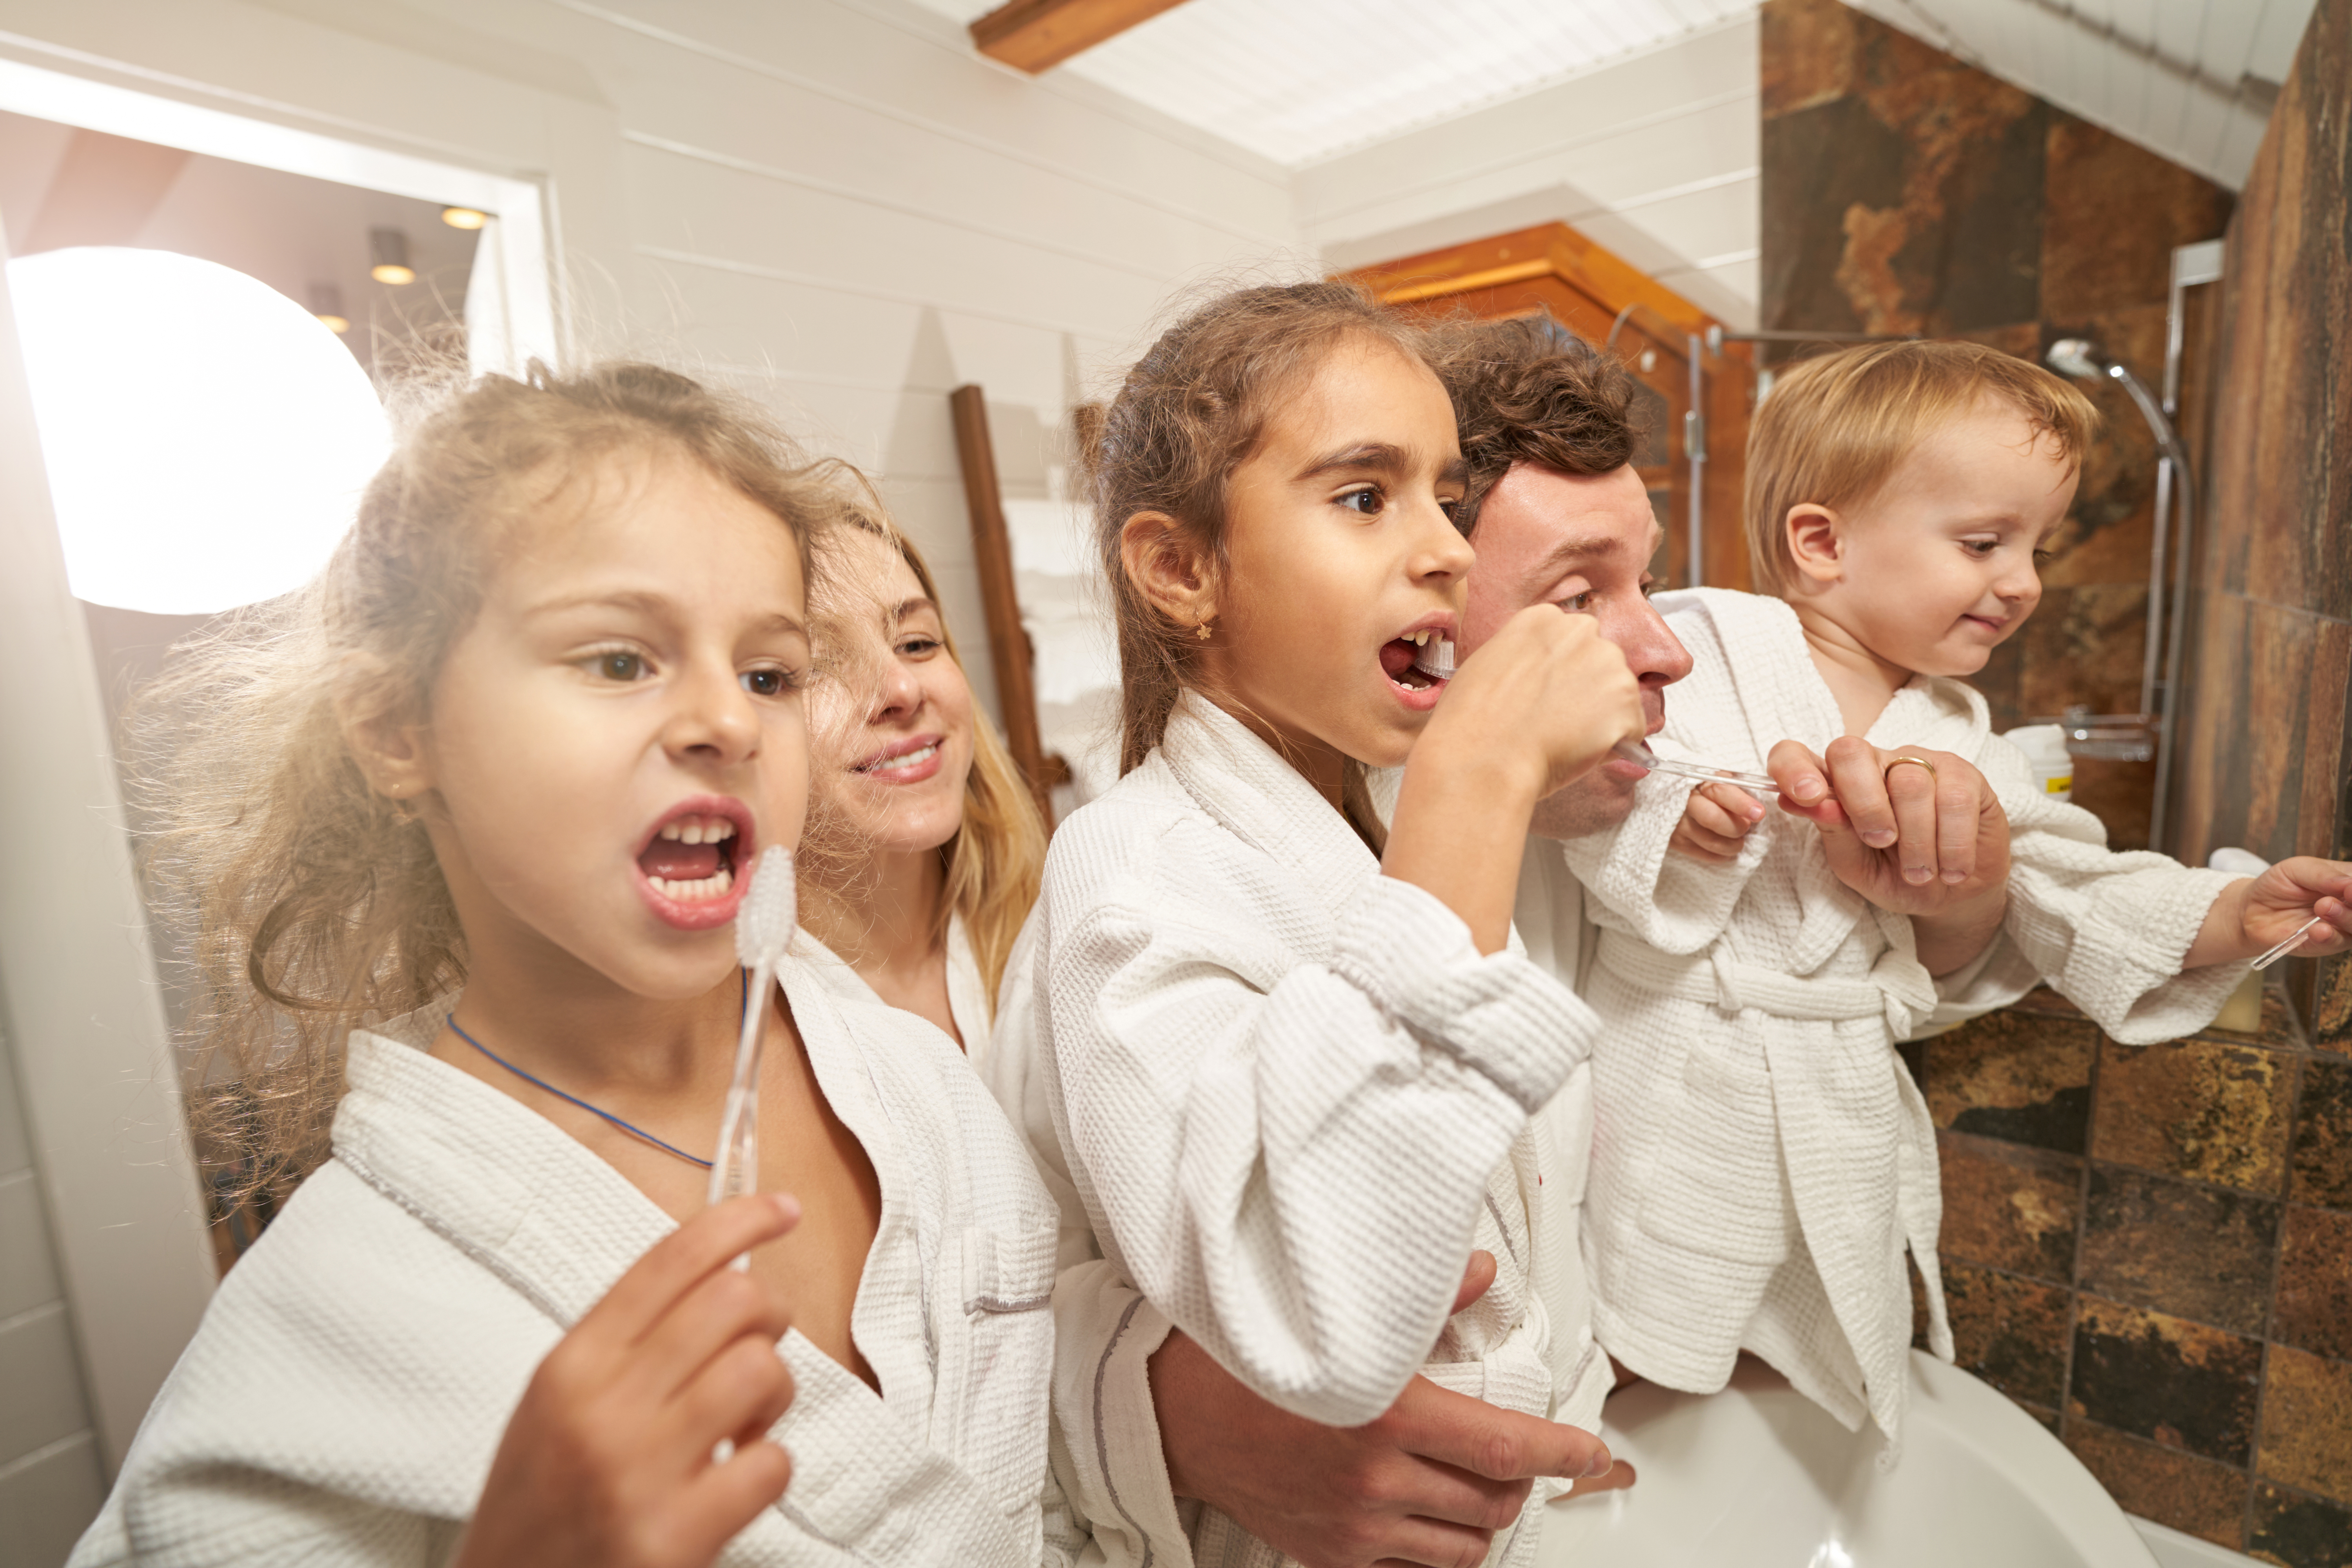 Érdemes együtt végezni a fogmosást a gyerekekkel, hogy lássák és tanulják a helyes technikát. (Forrás: Envato Elements)